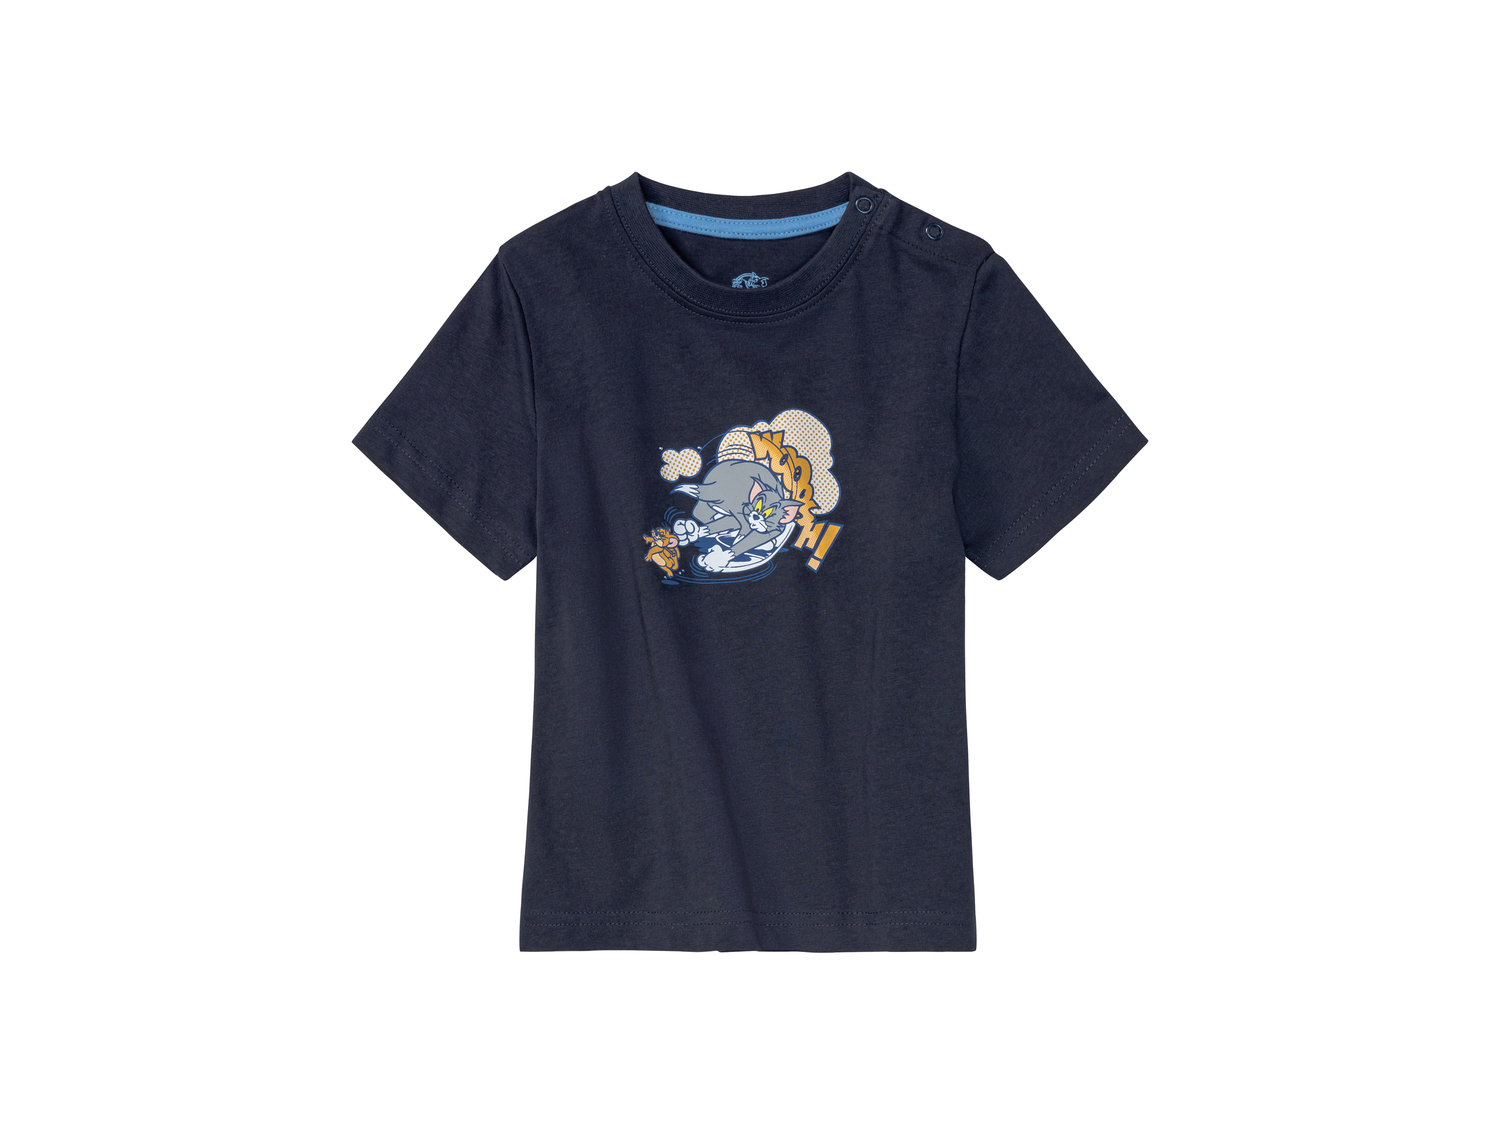 T-Shirt da bambino Tom-and-jerry, prezzo 3.49 &#8364; 
Misure: 1-6 anni 
- Puro ...